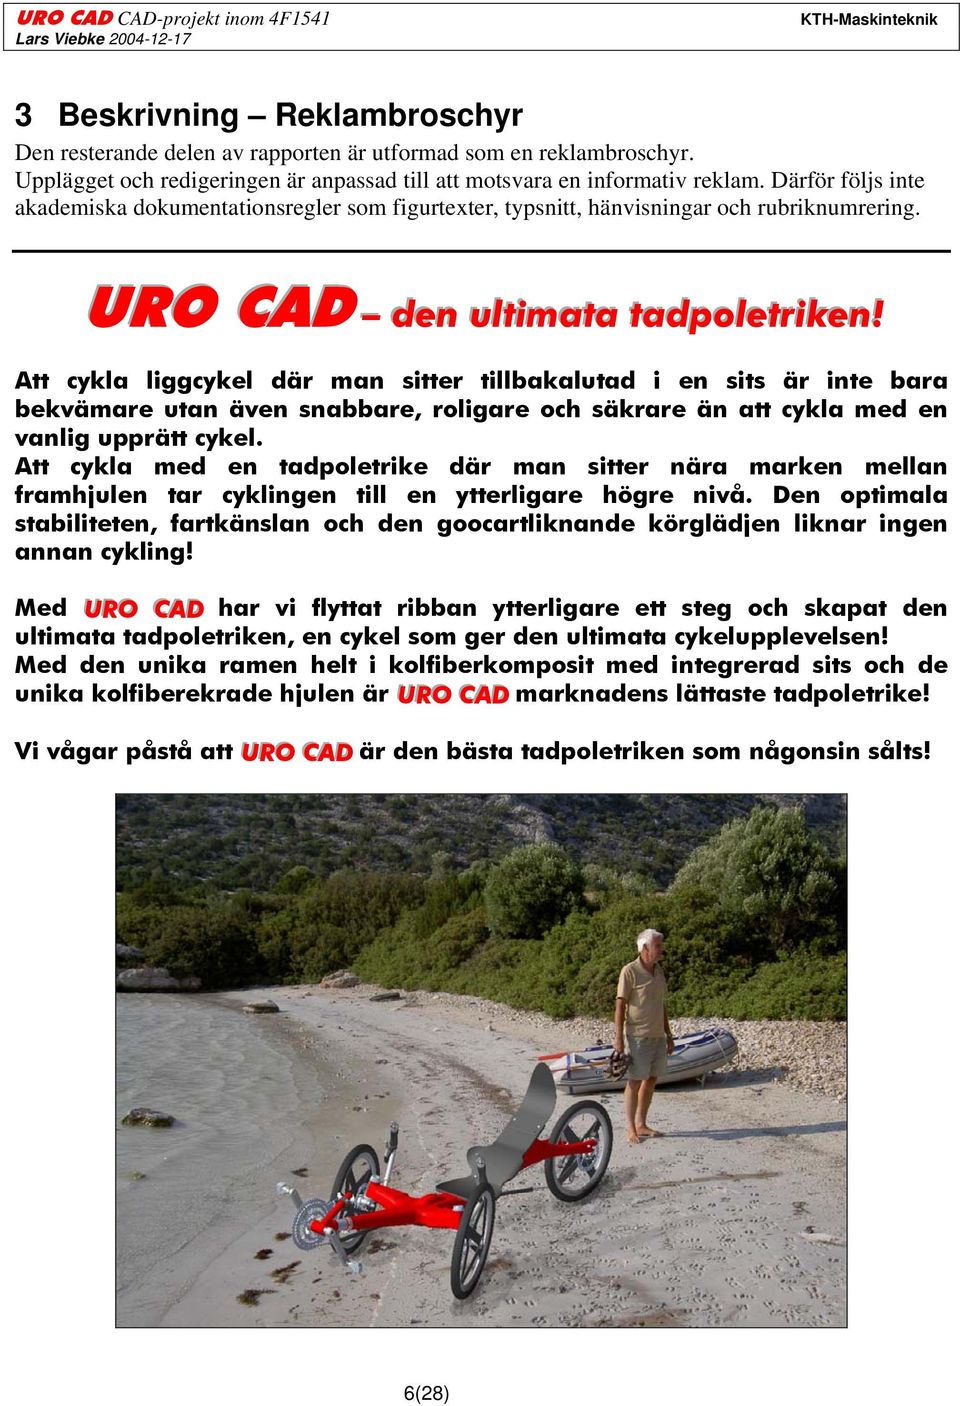 1 Reklaminledning: URO CAD den ultimata tadpoletriken URO CAD den ullttiimatta ttadpollettriiken!